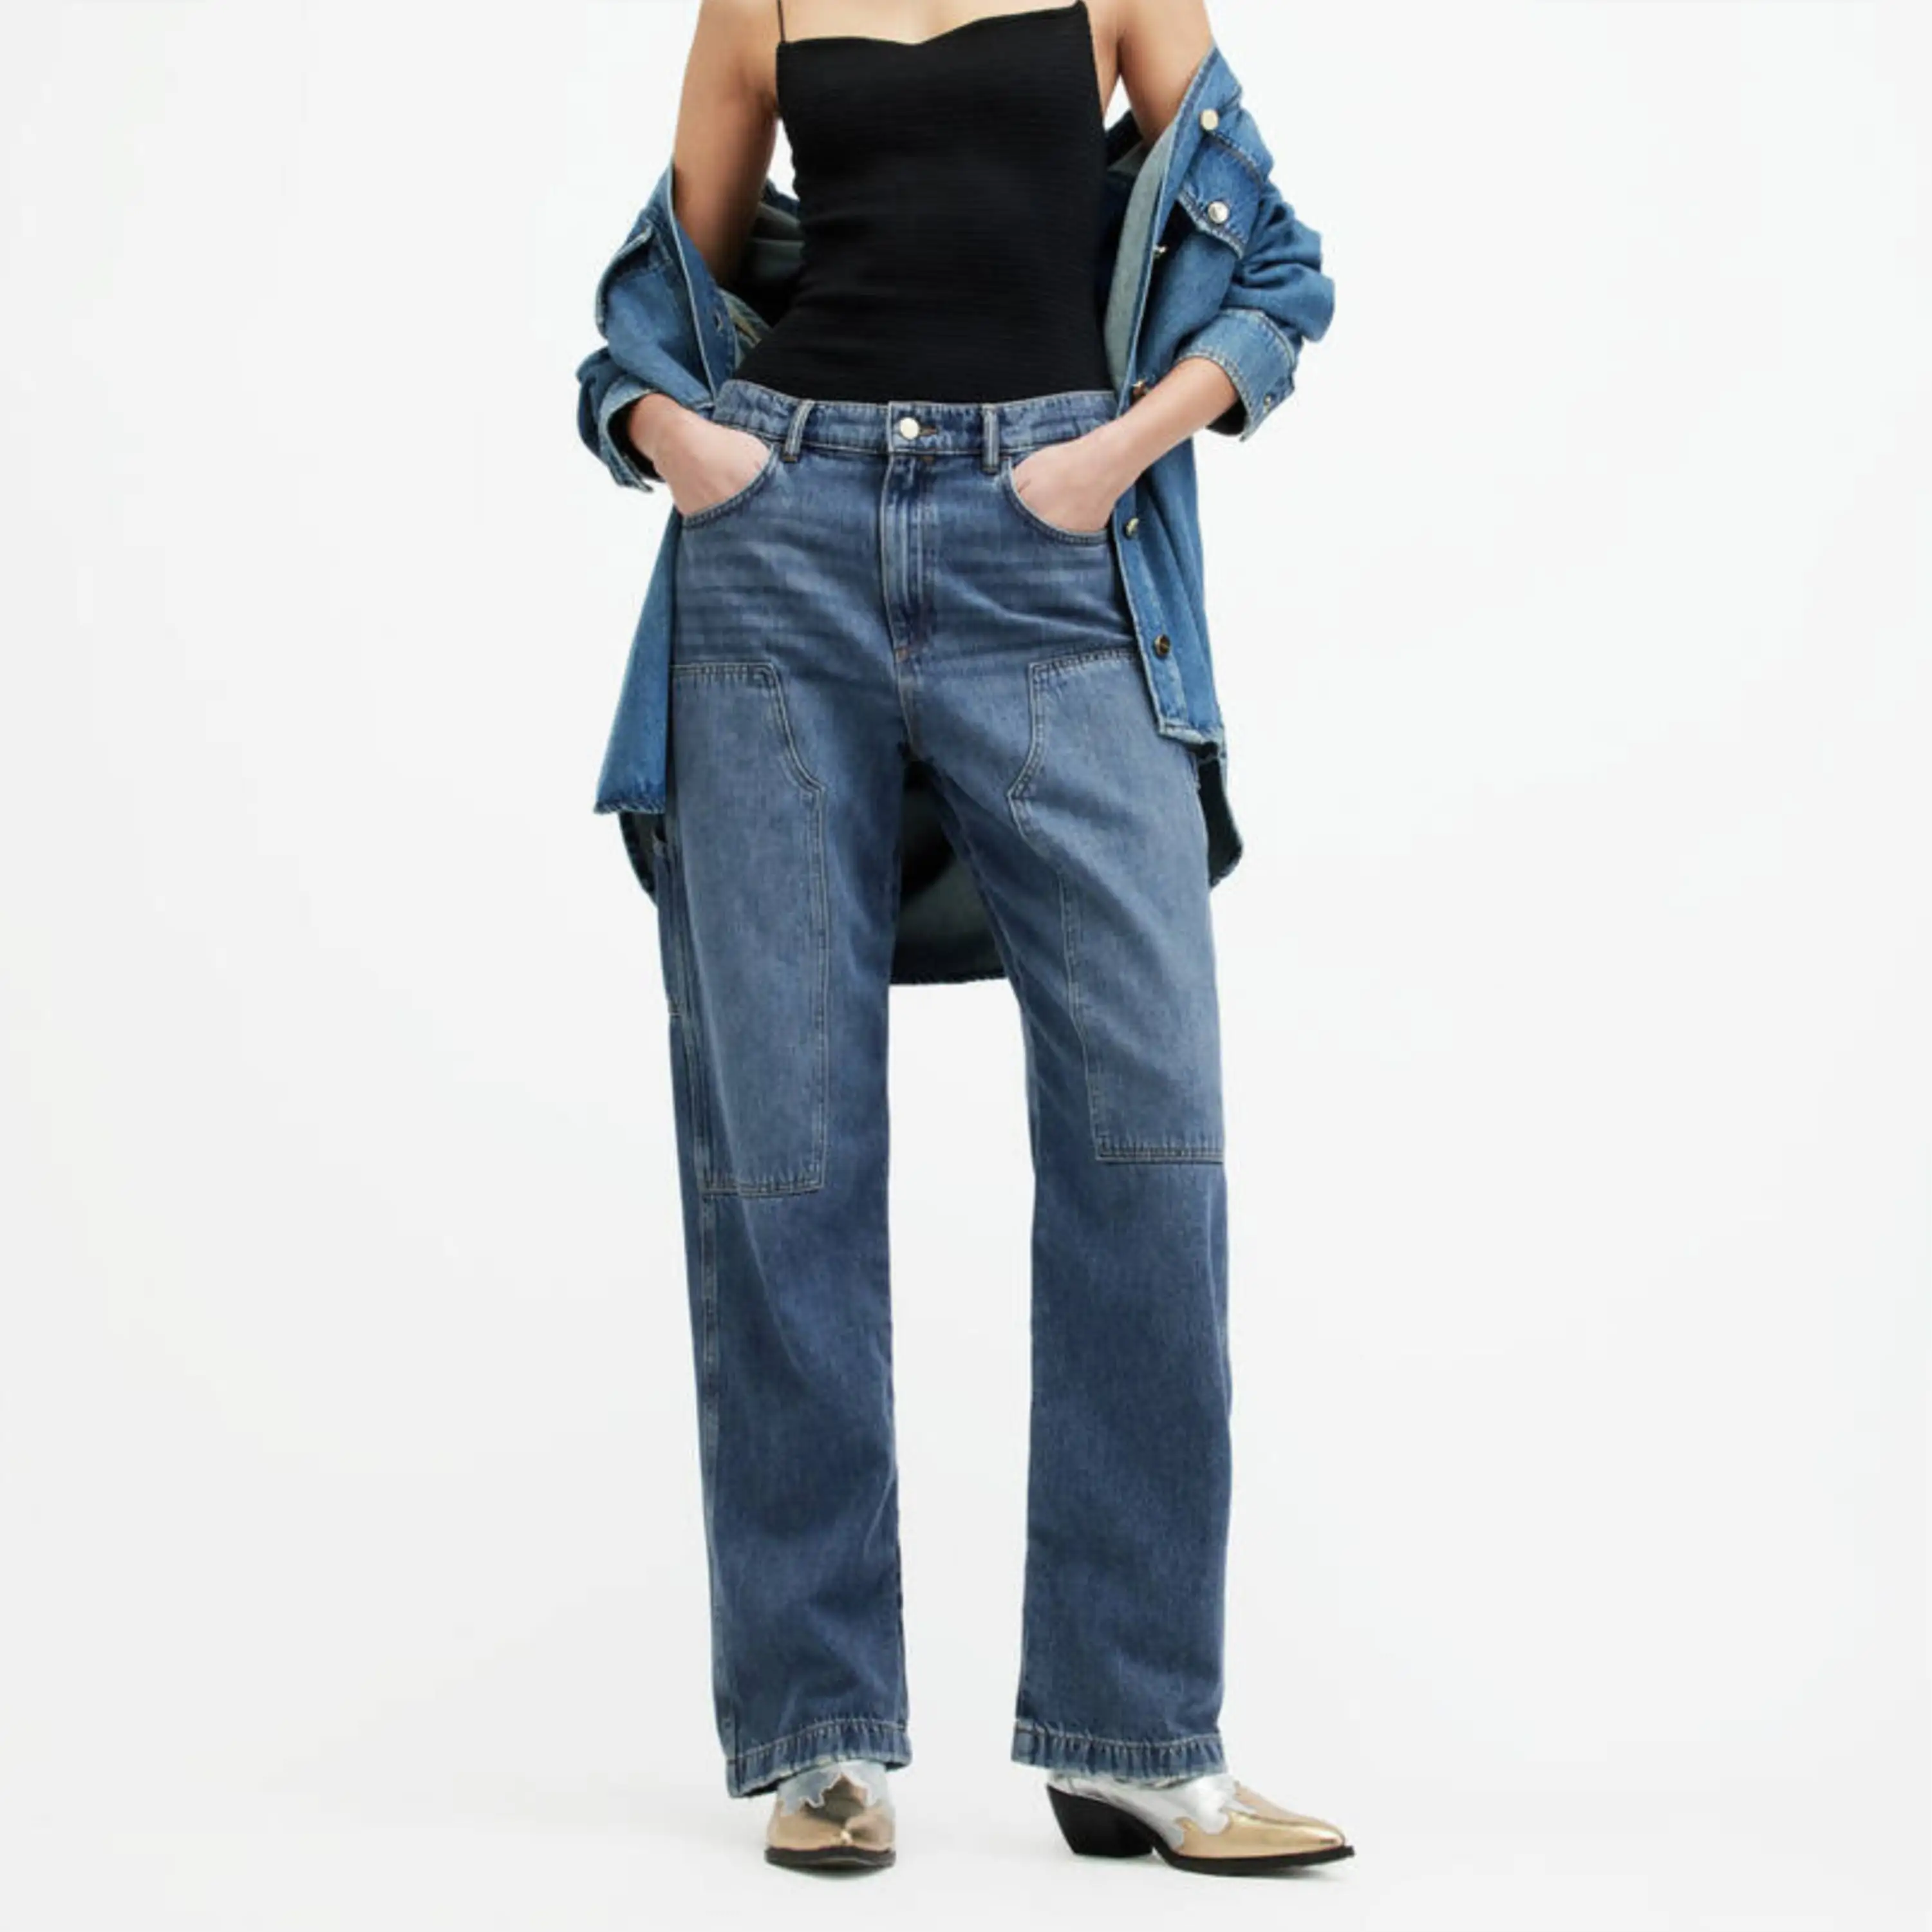 Premium Kwaliteit Dames Denim Jeans Broek Modieus Ontwerp Rits Fly Denim Jeans Voor Vrouwen Export Goedkope Prijs